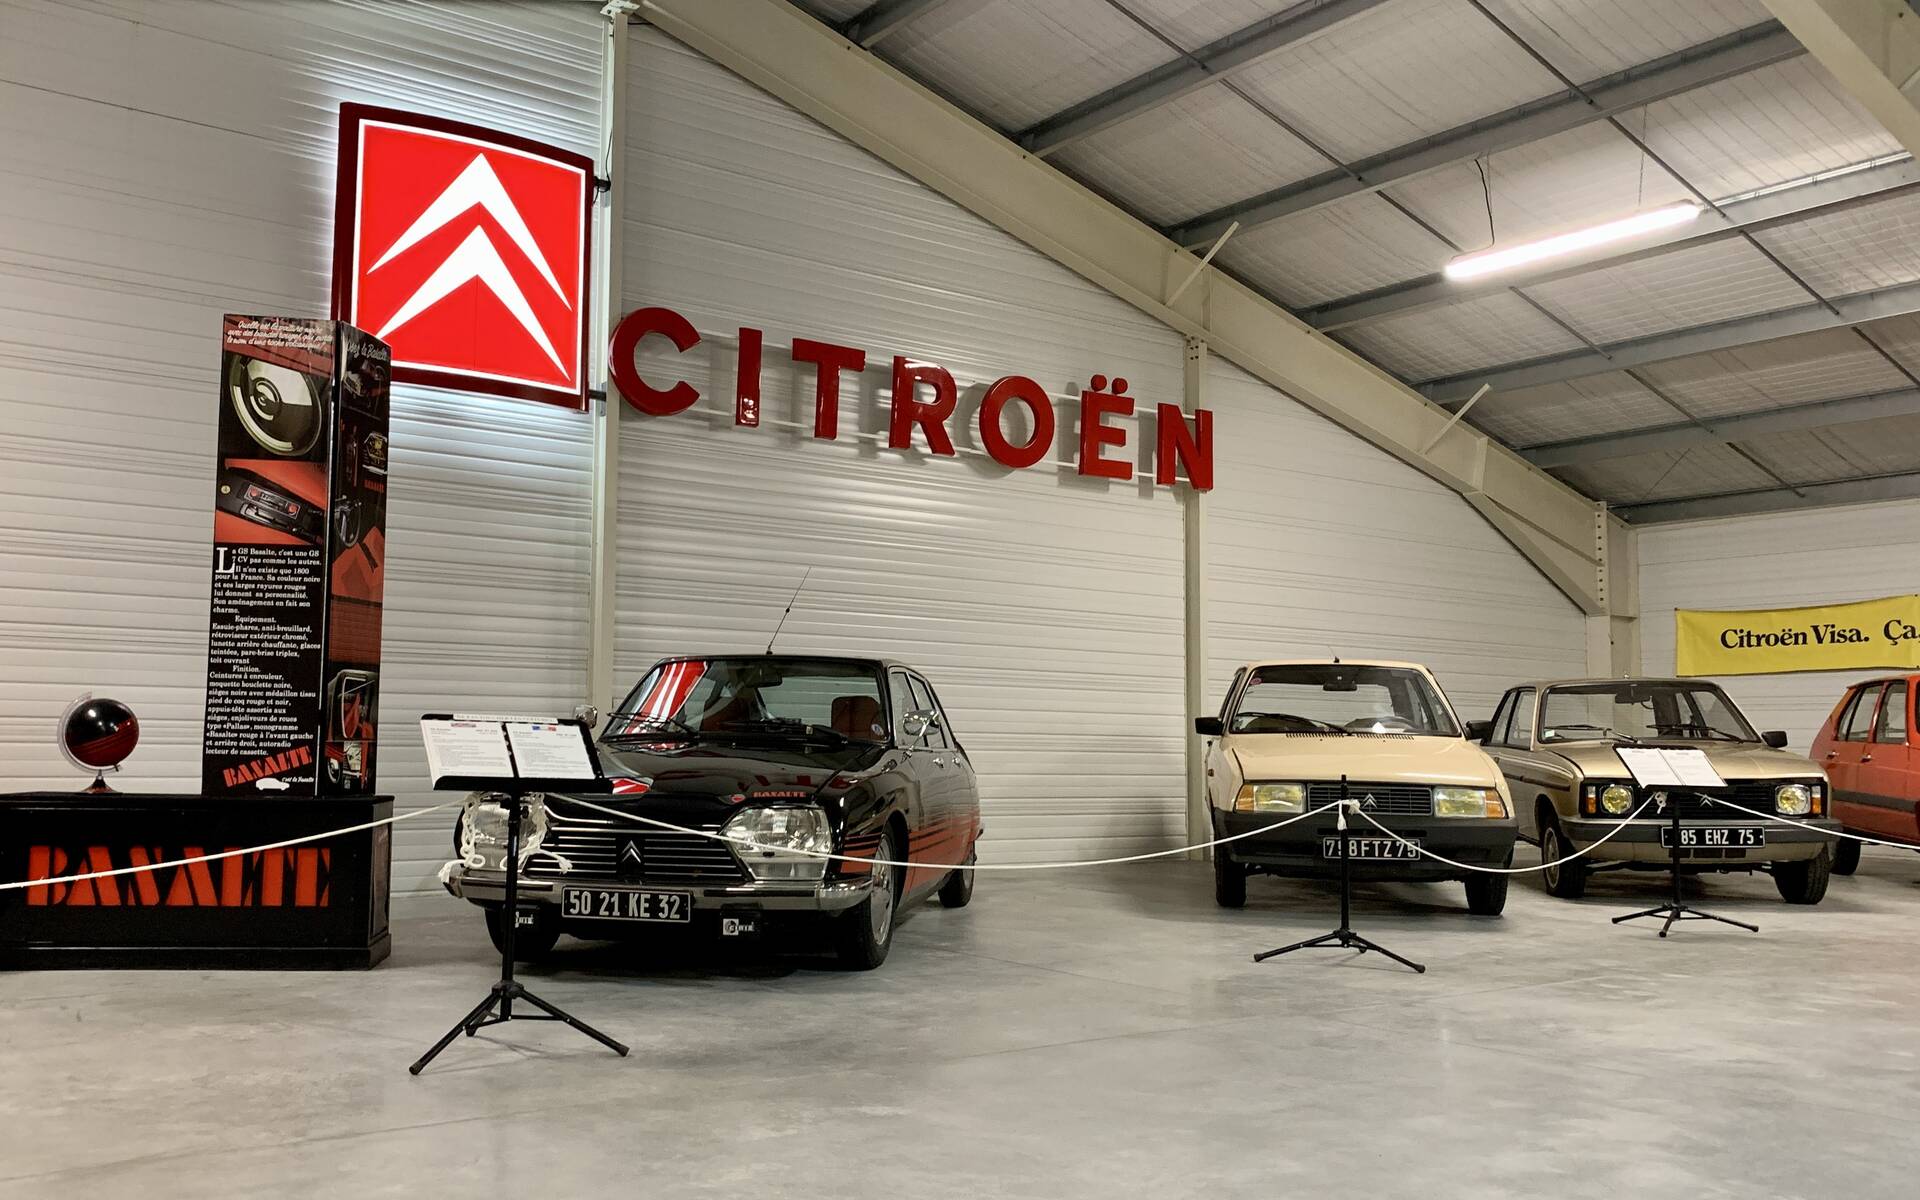 Photos: plus de 100 Citroën d'exception réunies dans un musée en France 543102-photos-plus-de-100-citroen-d-exception-reunies-dans-un-musee-en-france